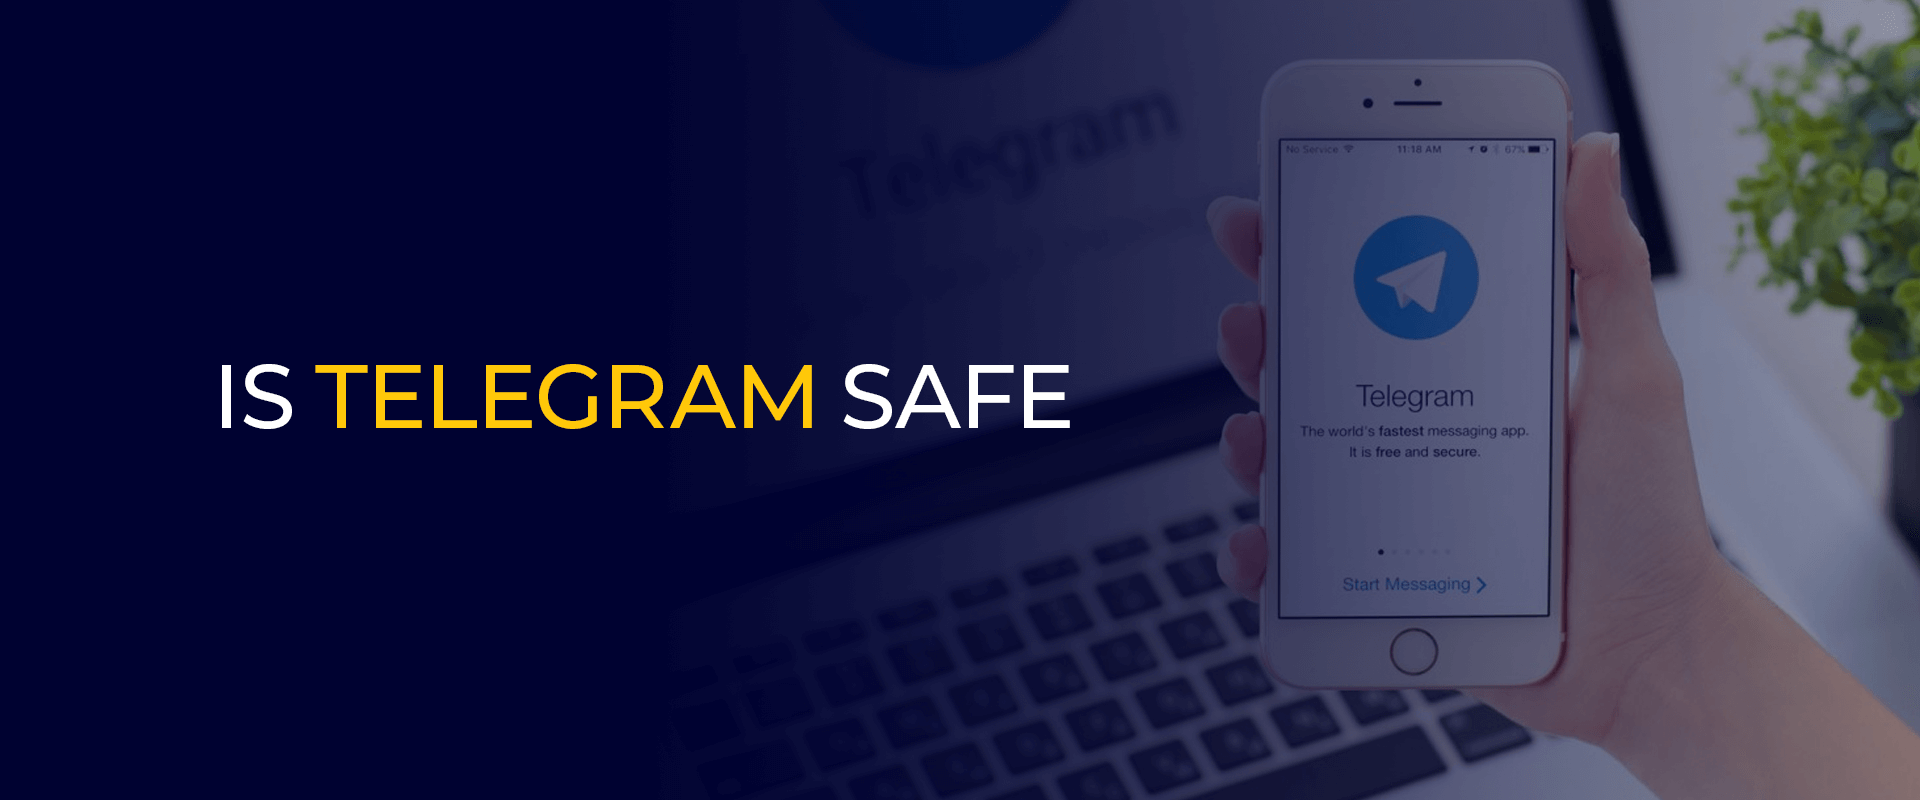 Is telegram safe